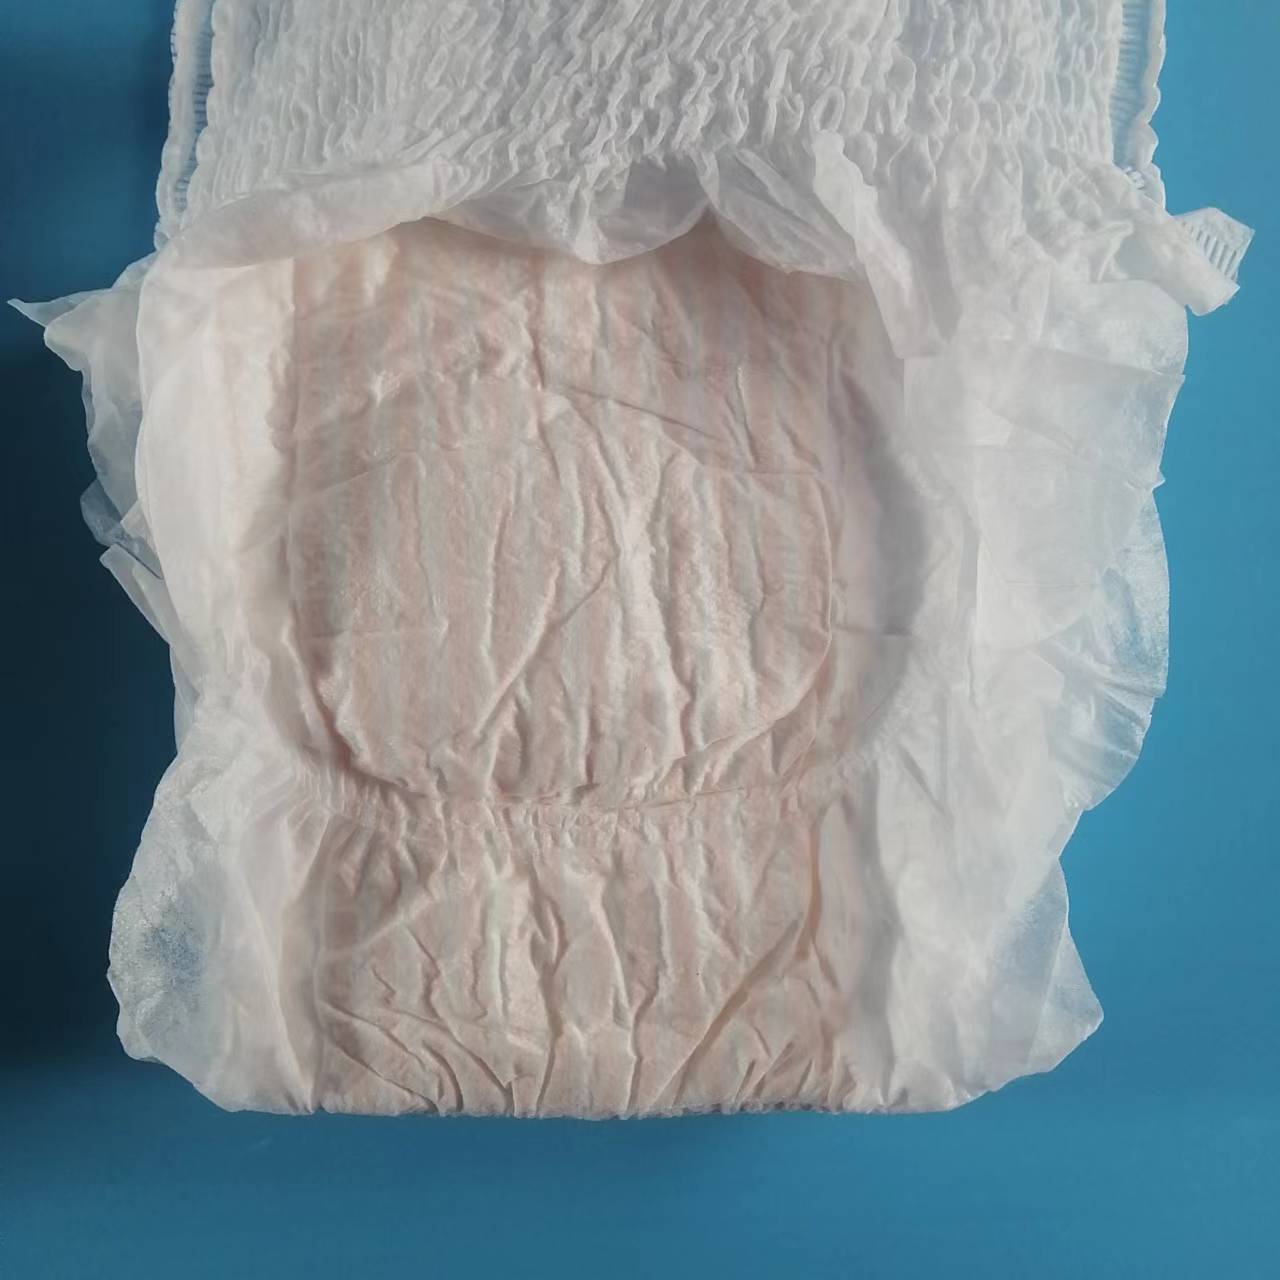 Damska bielizna zabezpieczająca okres Oddychające jednorazowe podpaski higieniczne Majtki menstruacyjne